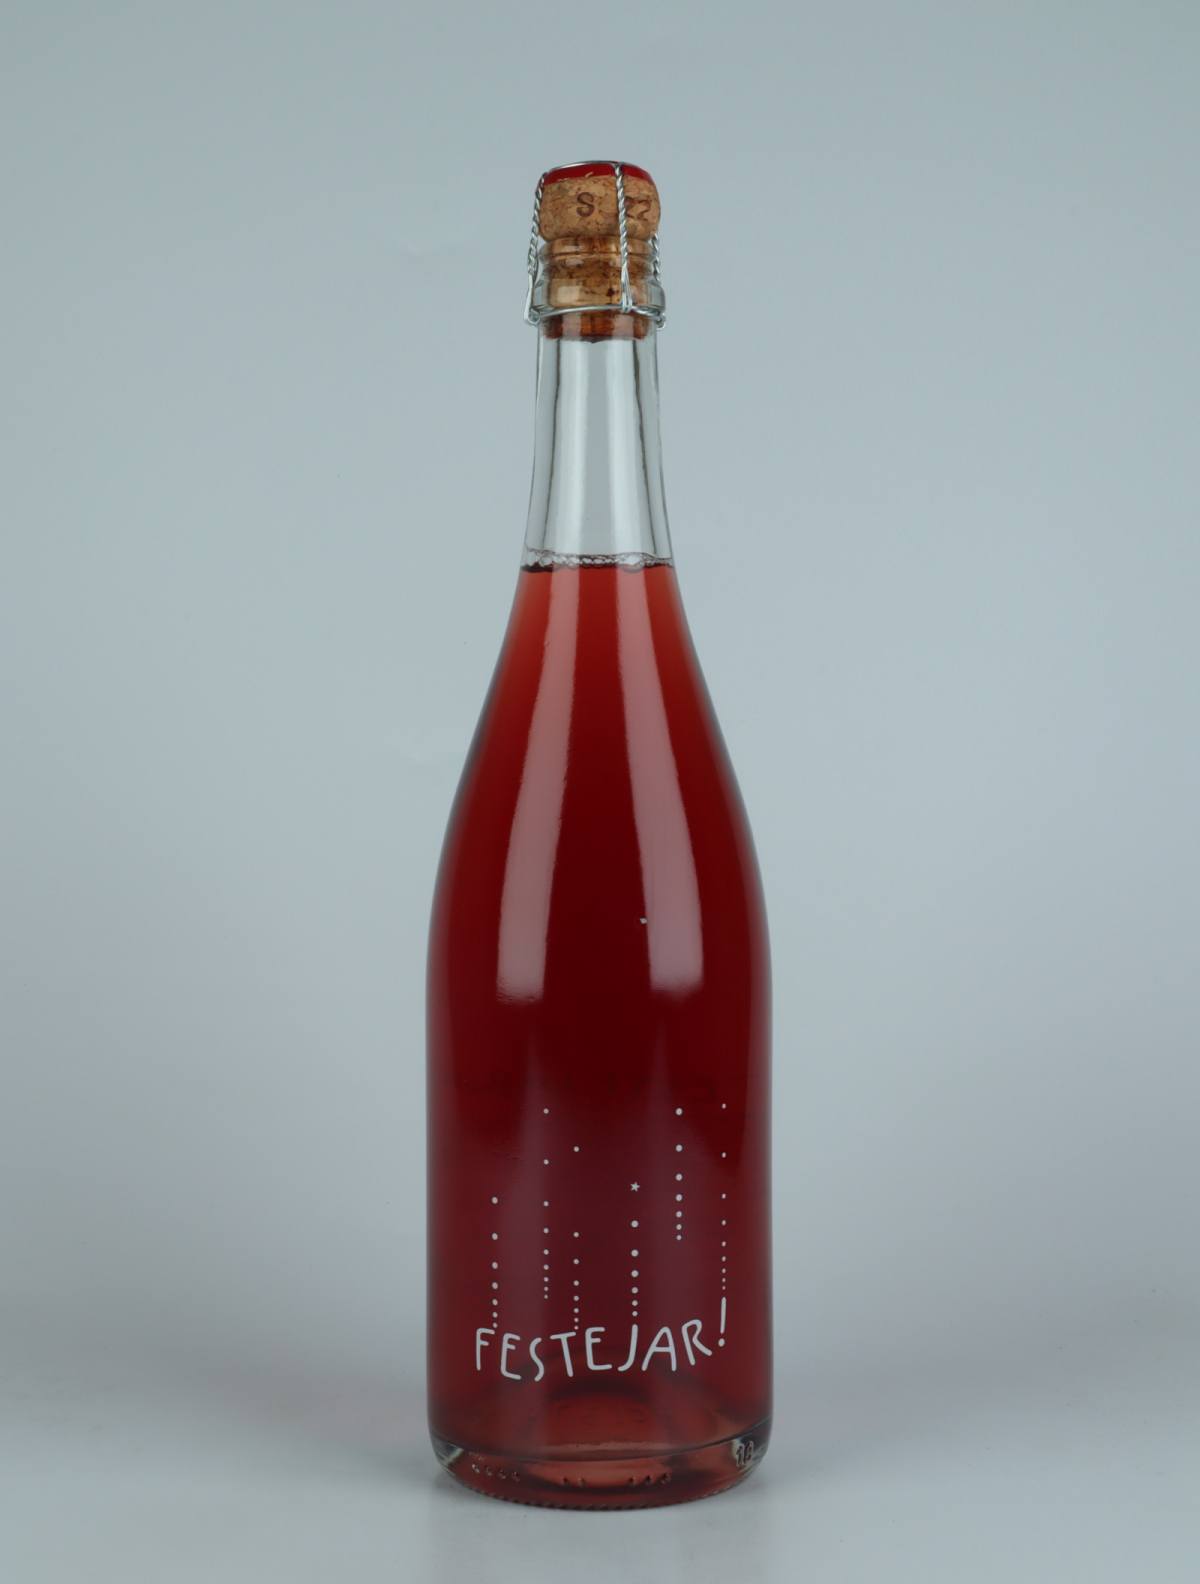 A bottle 2022 Festejar Rosé Sparkling from Patrick Bouju, Auvergne in France